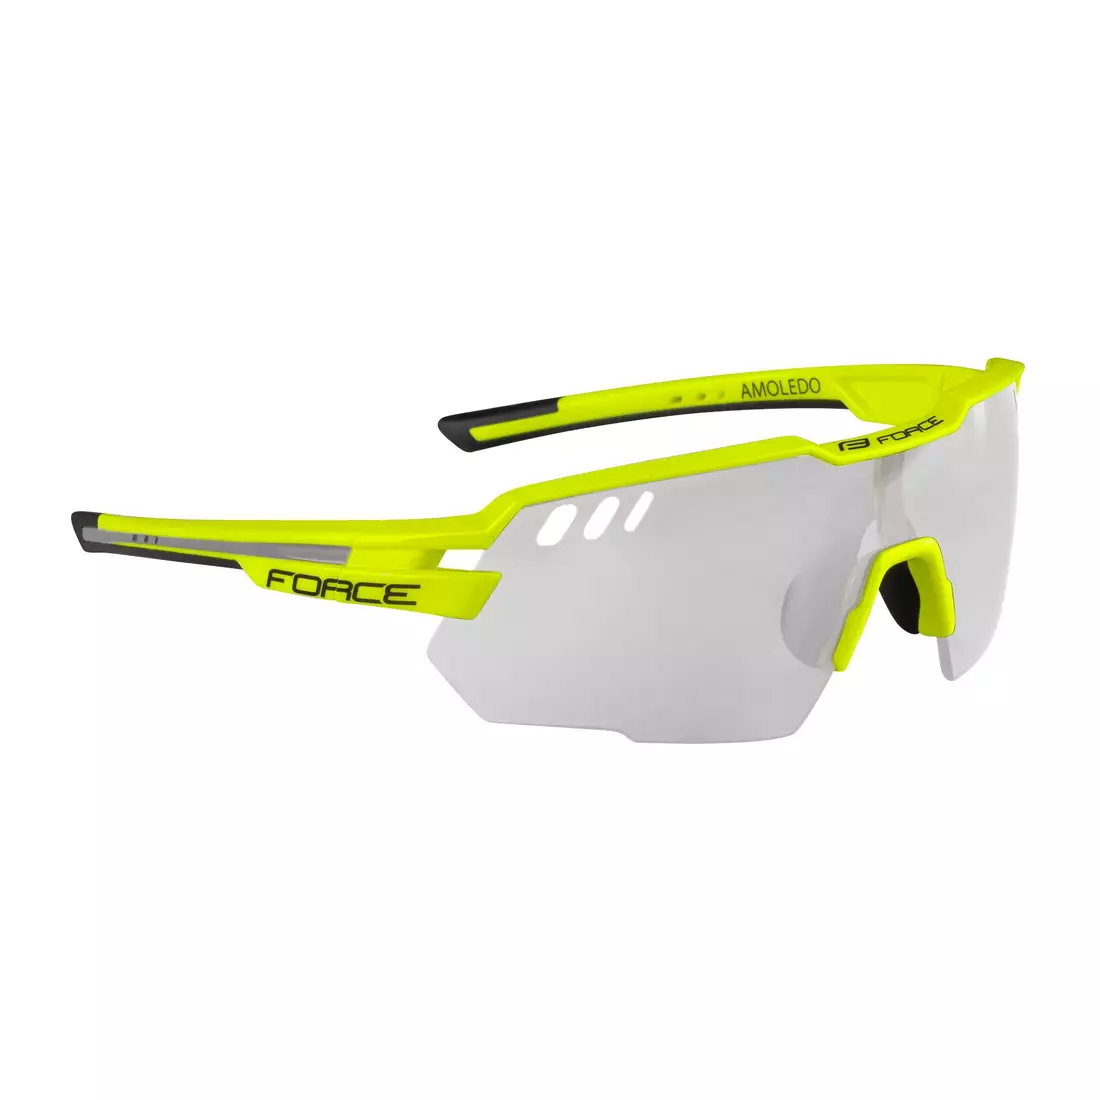 FORCE AMOLEDO Kerékpár / sport szemüveg fotokróm fluor sárga 910852